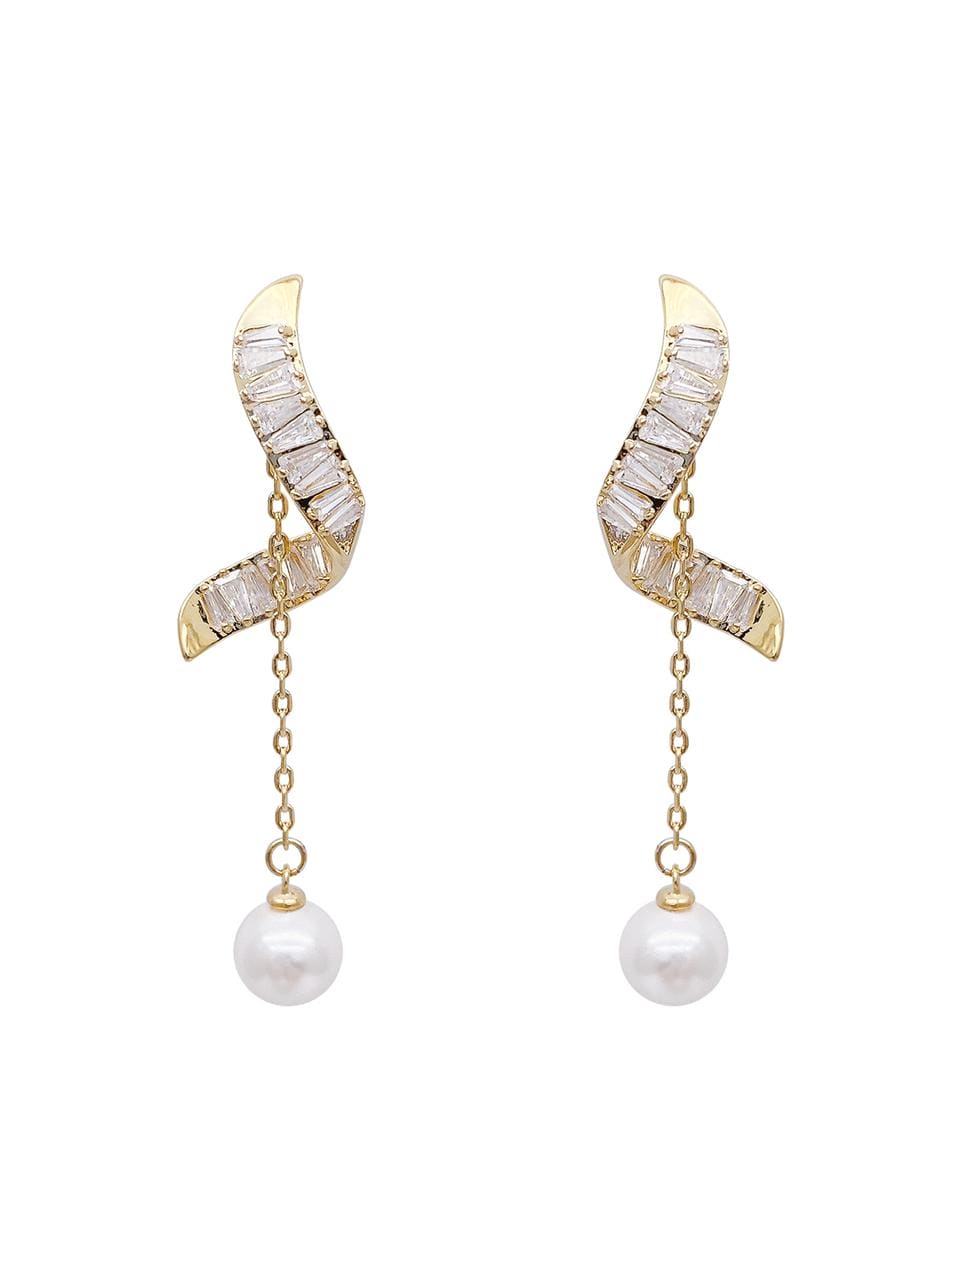 Pearl Tassels Earring For Women, Bling Earrings For Women, Butterfly Zircon Ear Jewelry, Vintage Wedding Earrings